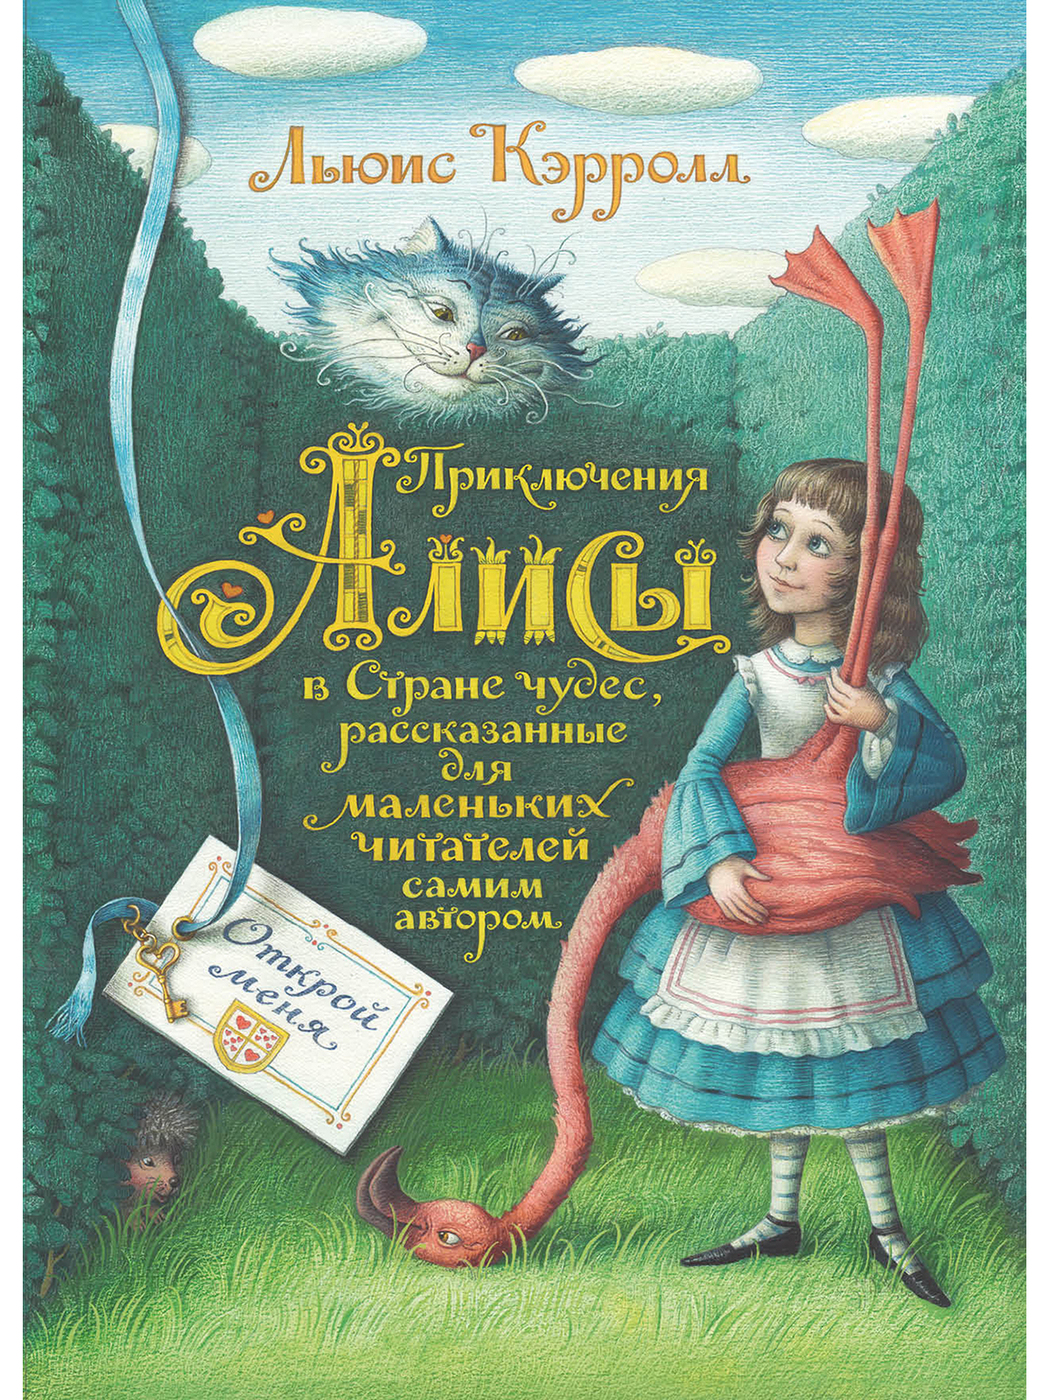 Страна чудес л кэрролла 5 класс. Кэрролл Льюис "Алиса в стране чудес". Алиса в стране чудес Льюис Кэрролл книга. Приключения Алисы в стране чудес книга. Льюис Кэролл Алиса в стране чудес.